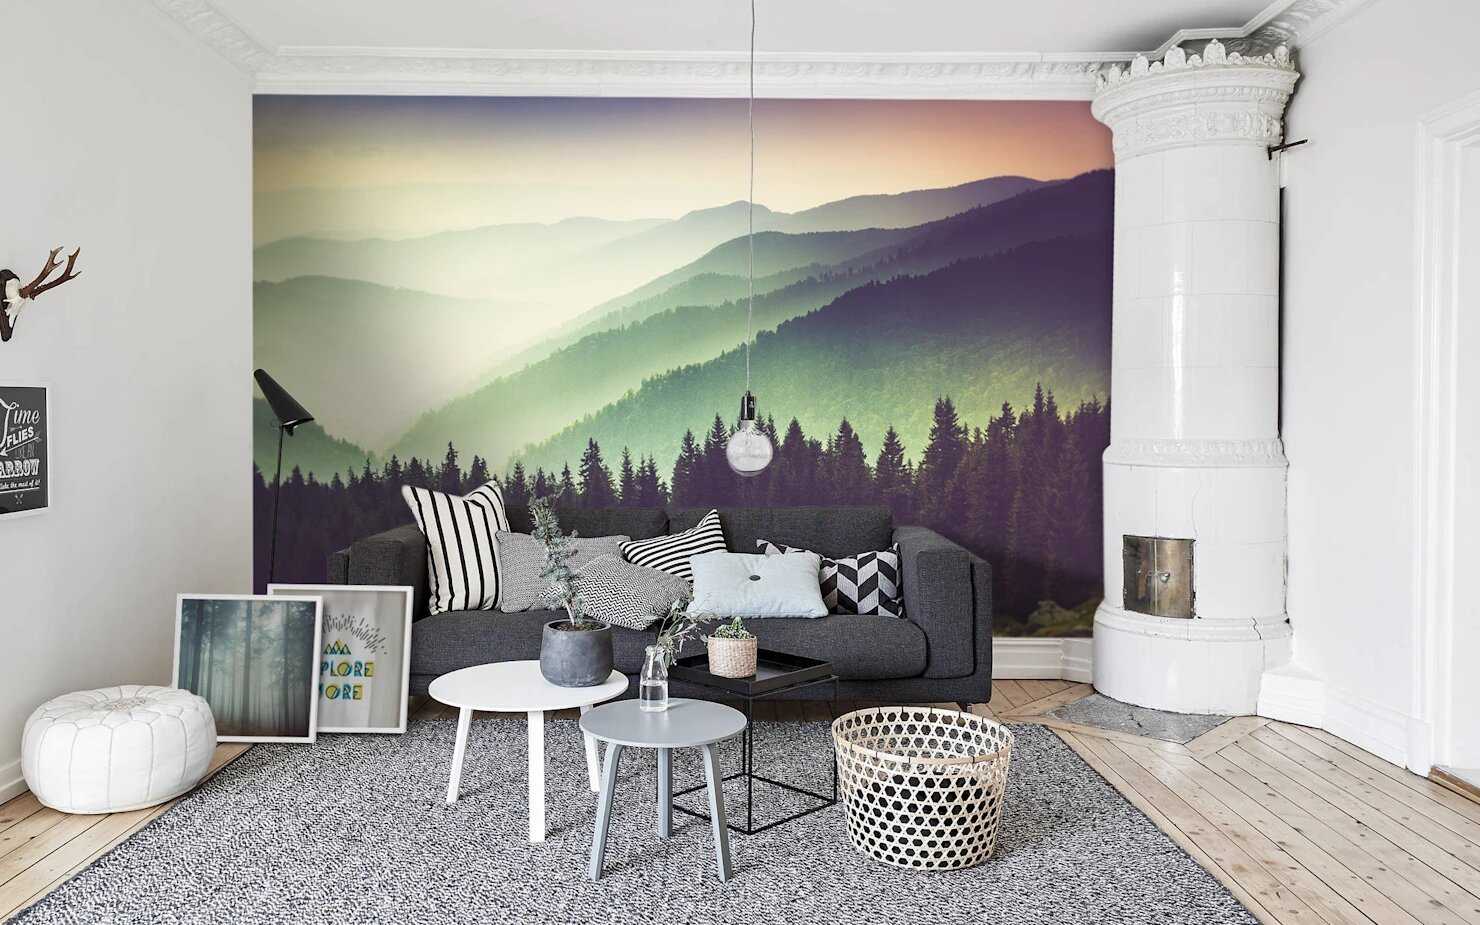 Роспись стен в интерьере: художественная, декоративная своими руками, техника для новичков, краски, дизайн интерьера, фото